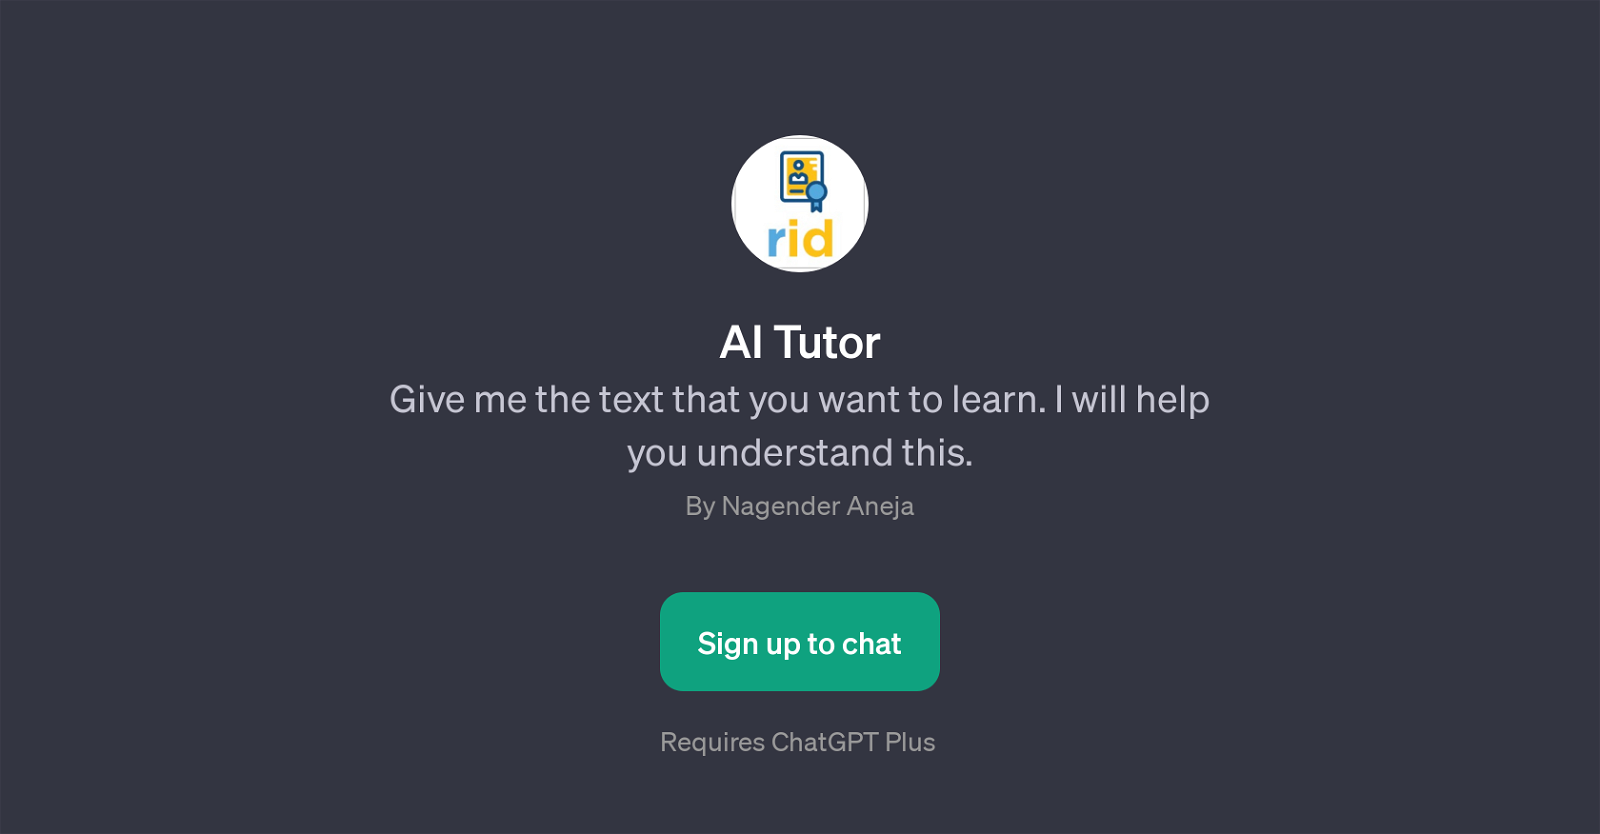 AI Tutor website